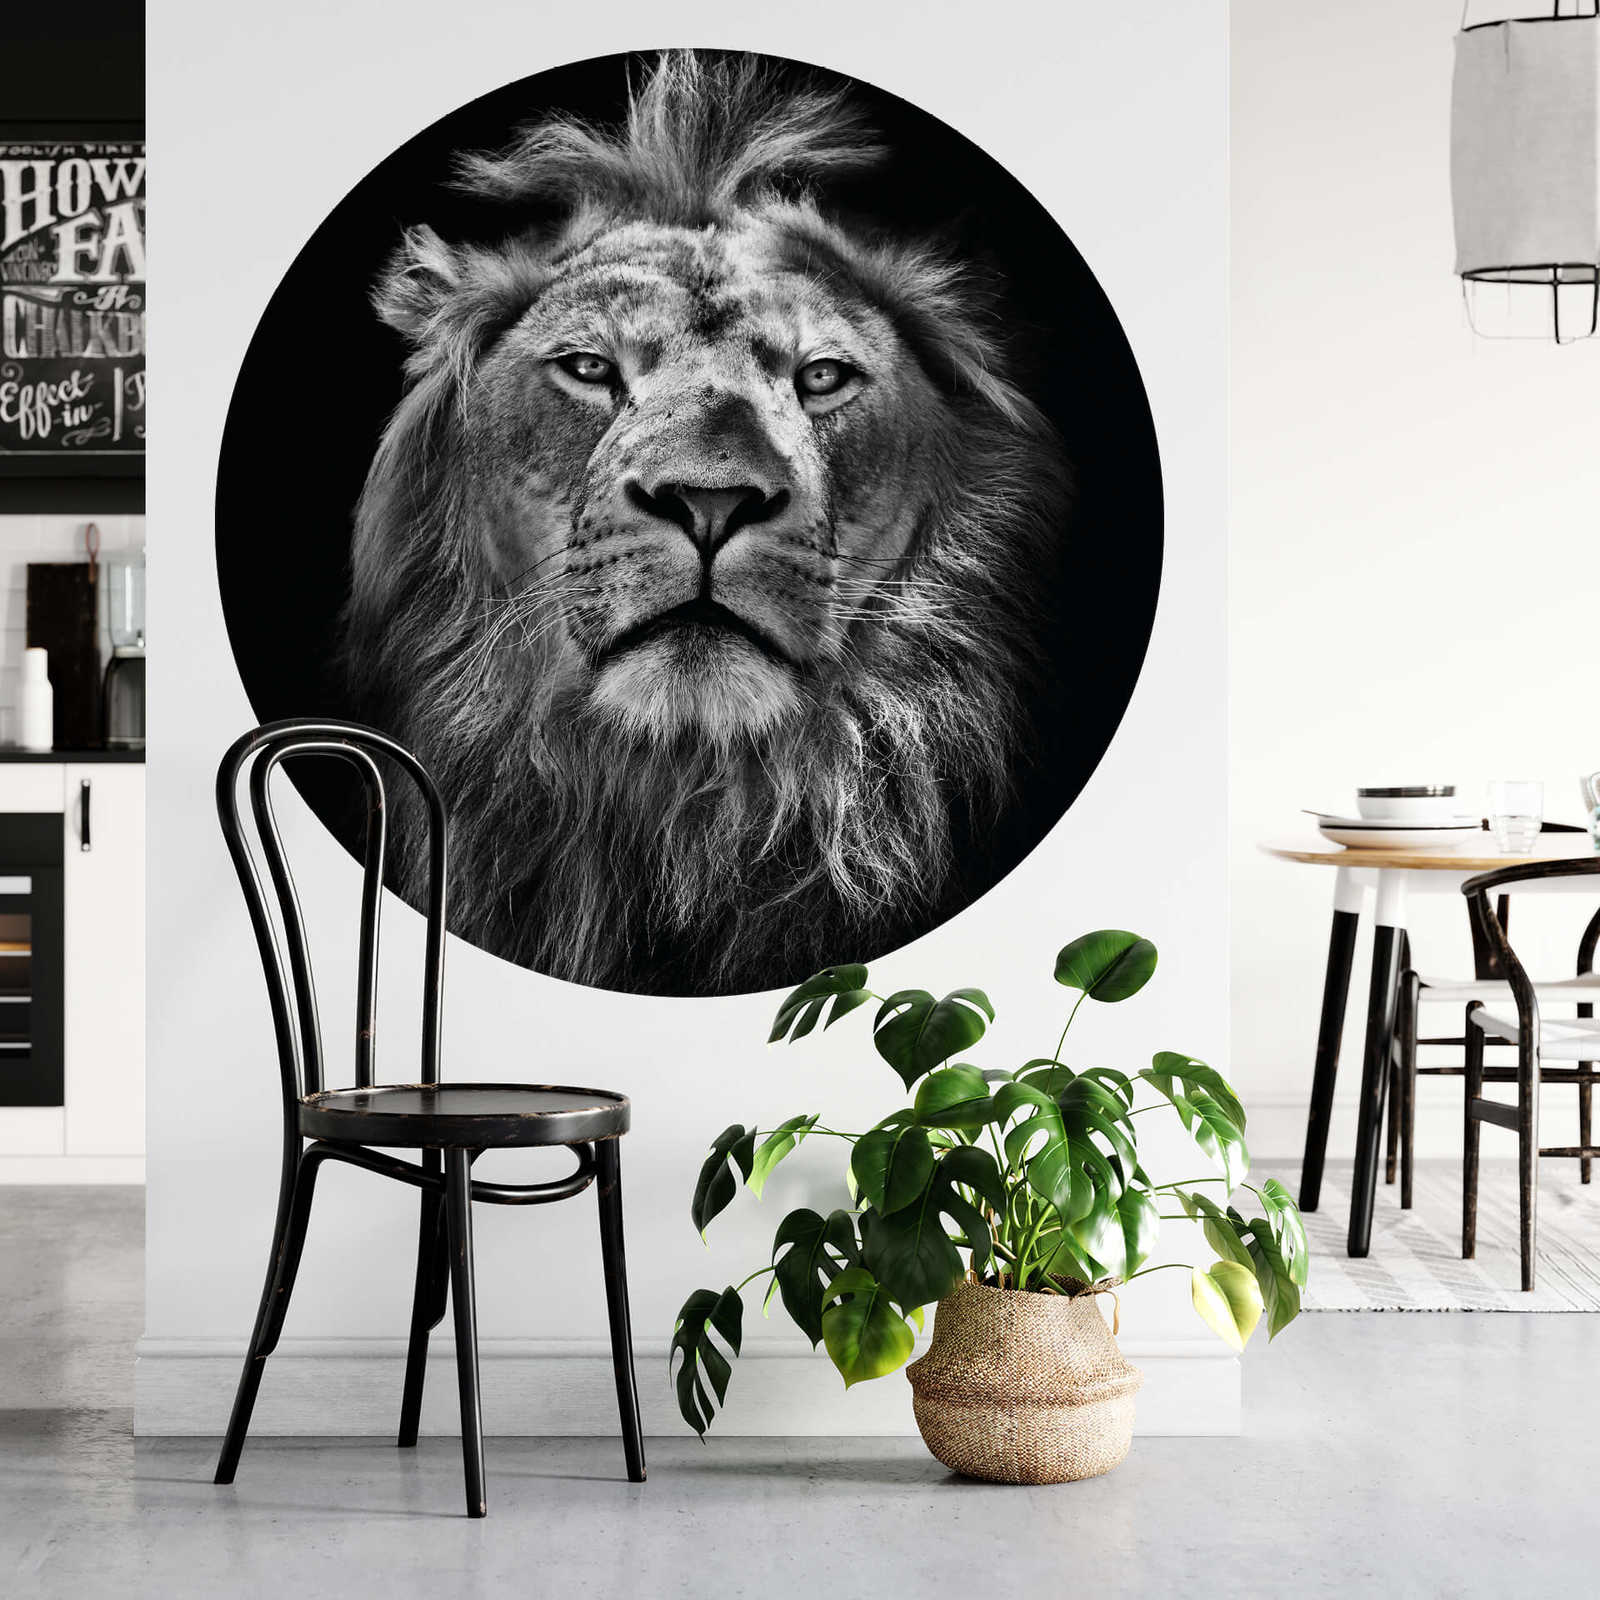             Muurschildering machtige leeuw
        